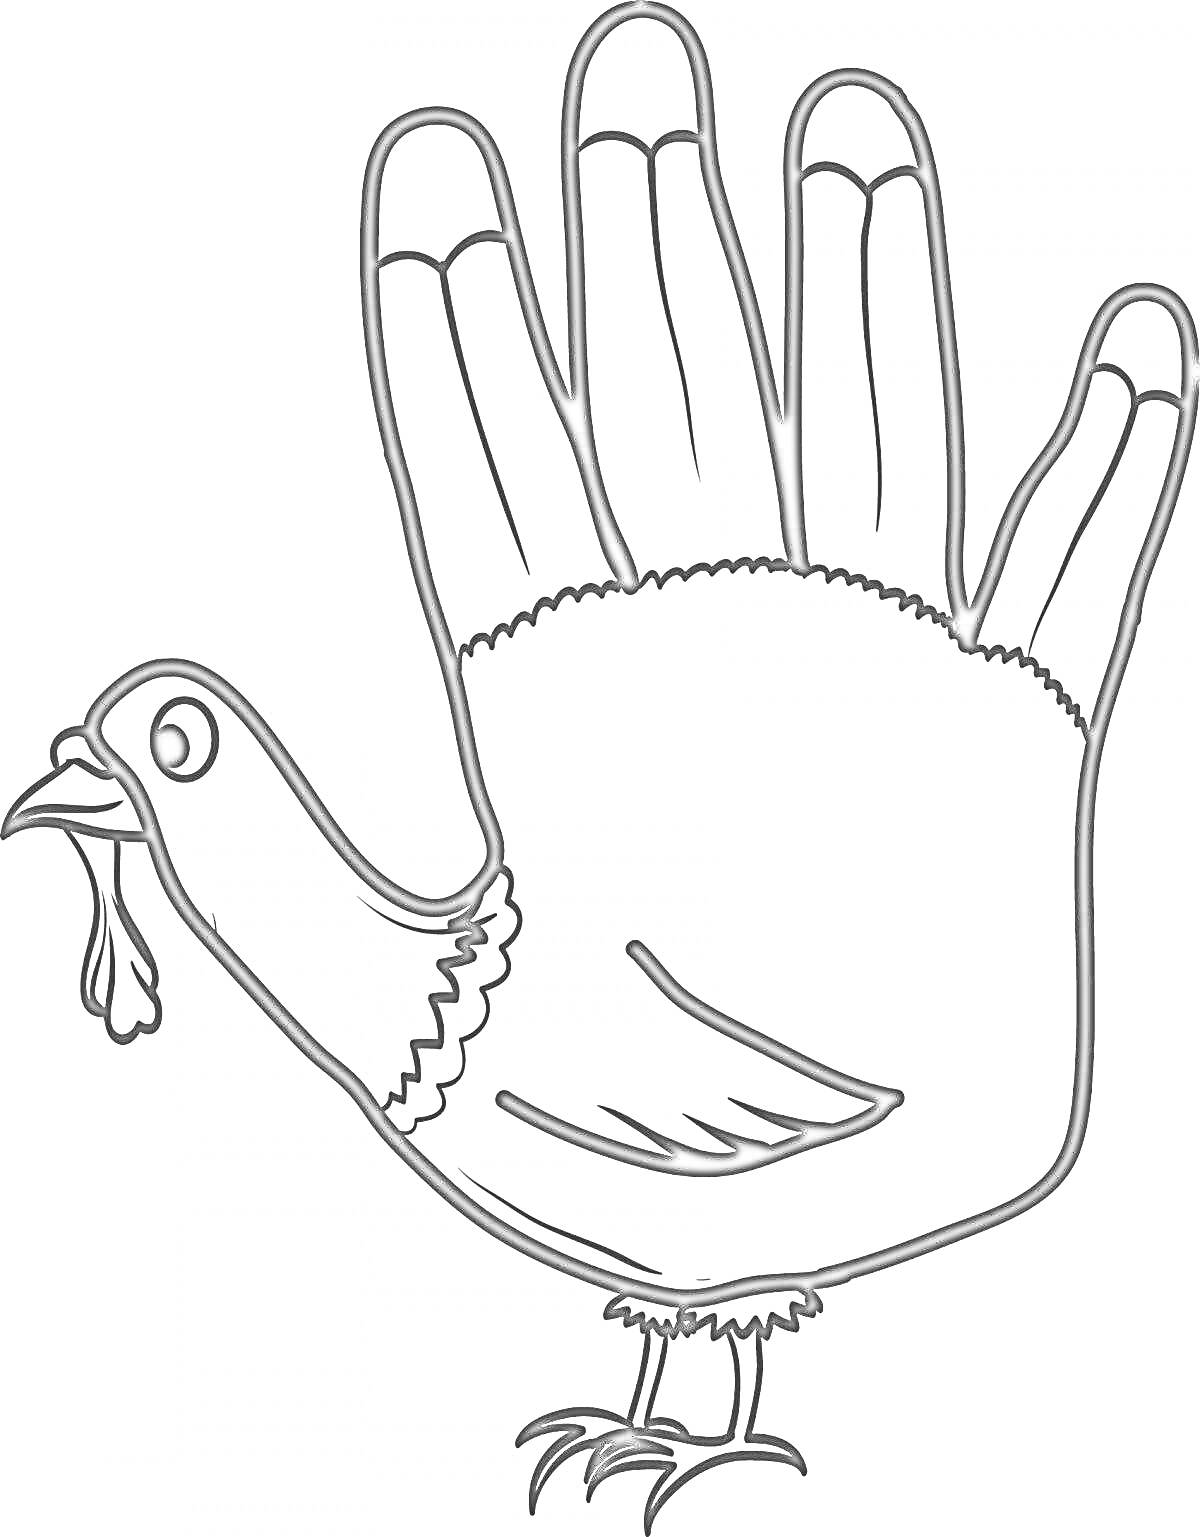 Раскраска Ладонь в виде индейки с деталями, включая голову, хвост, и лапки индейки